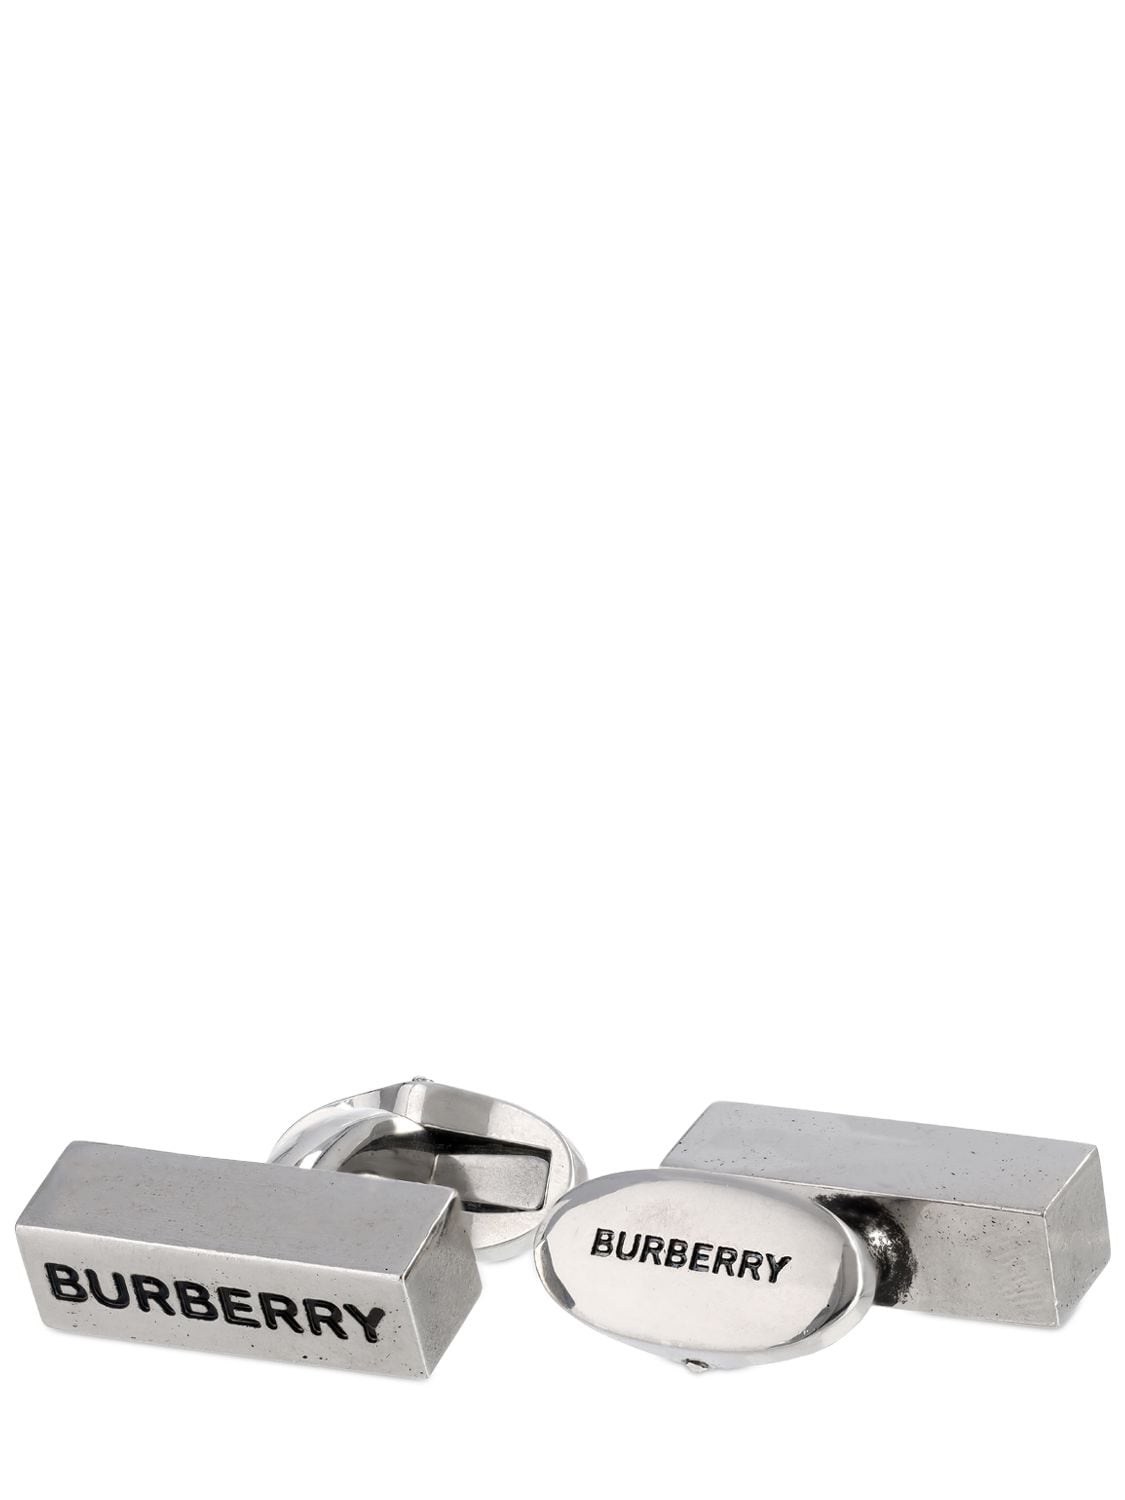 Engraved Burberry Logo Cufflinks - BURBERRY - Modalova